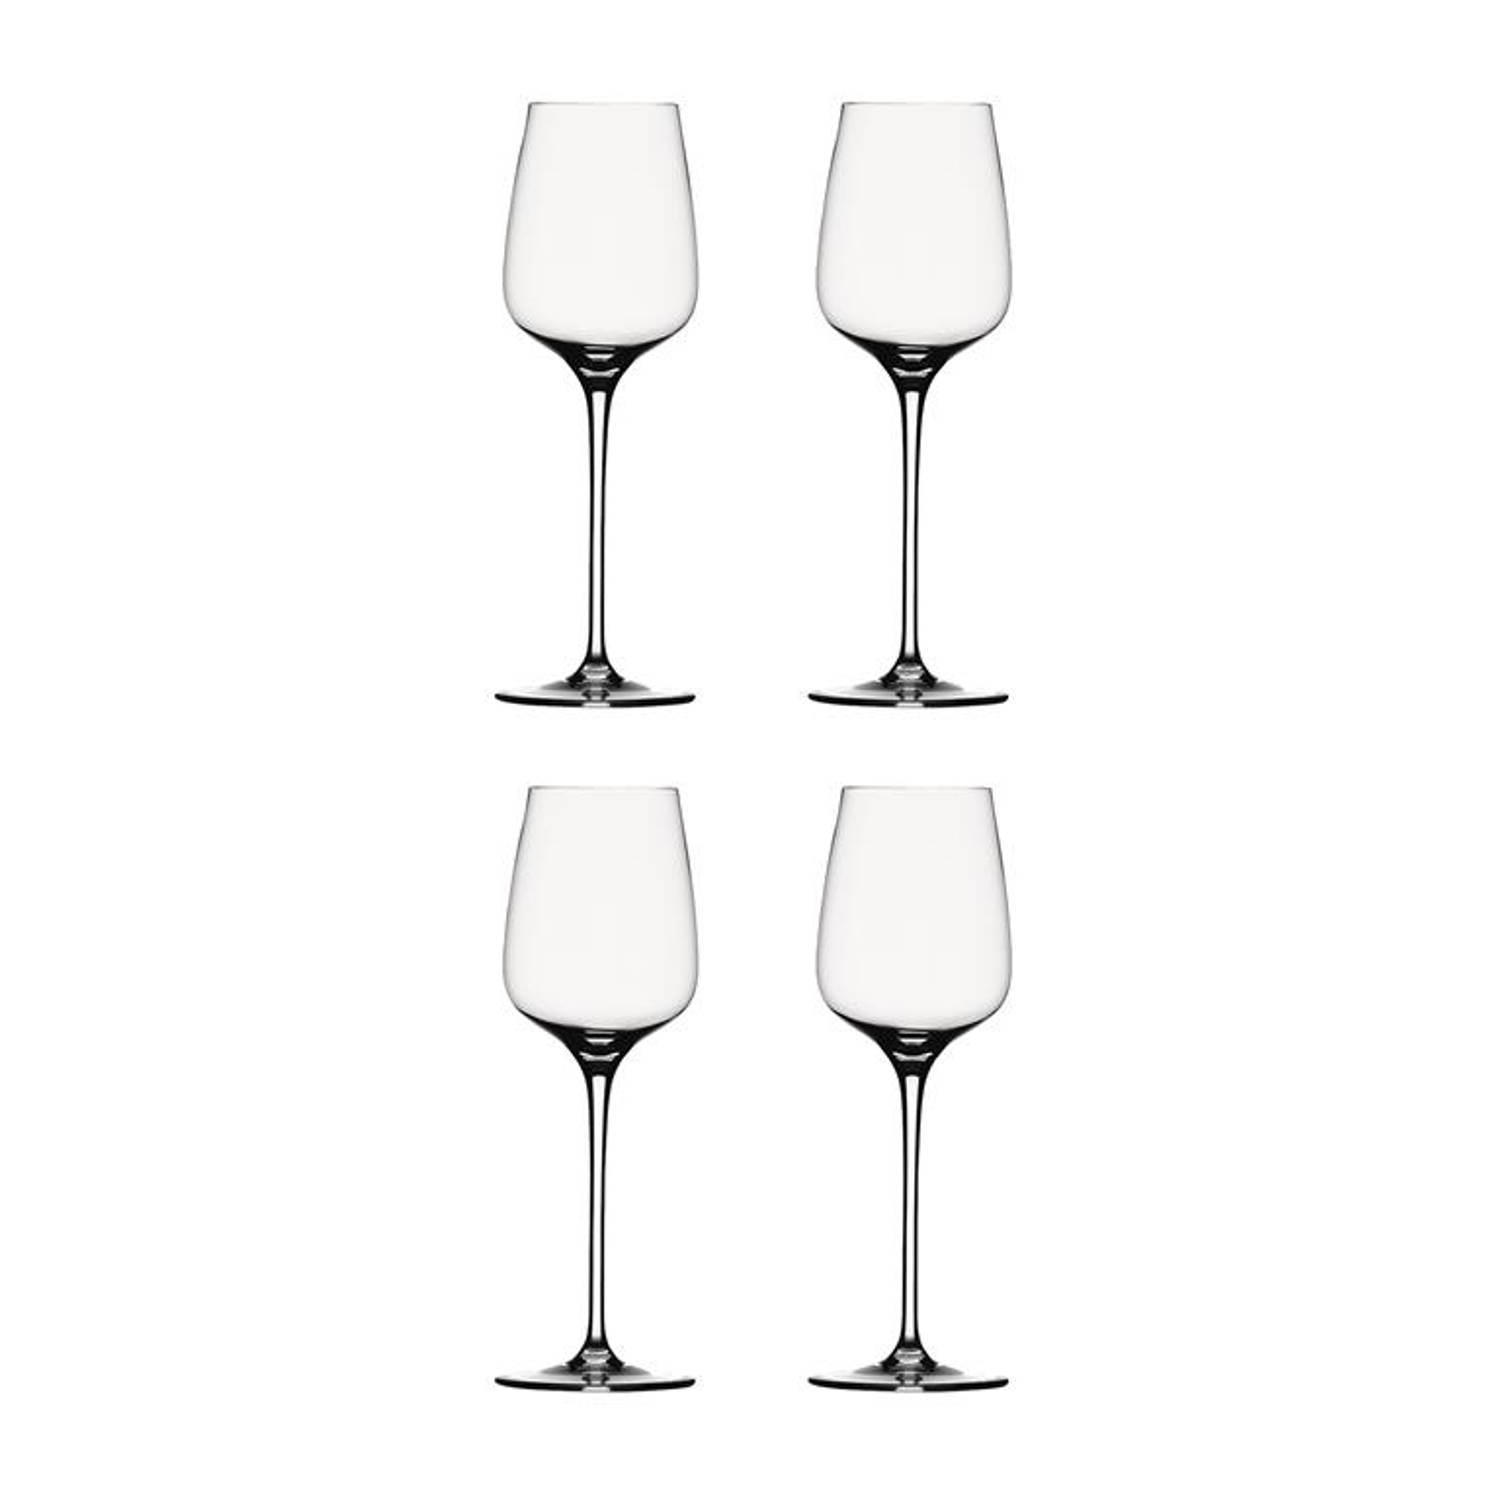 Spiegelau Willsb. Anniversary Witte Wijn (4 stuks)